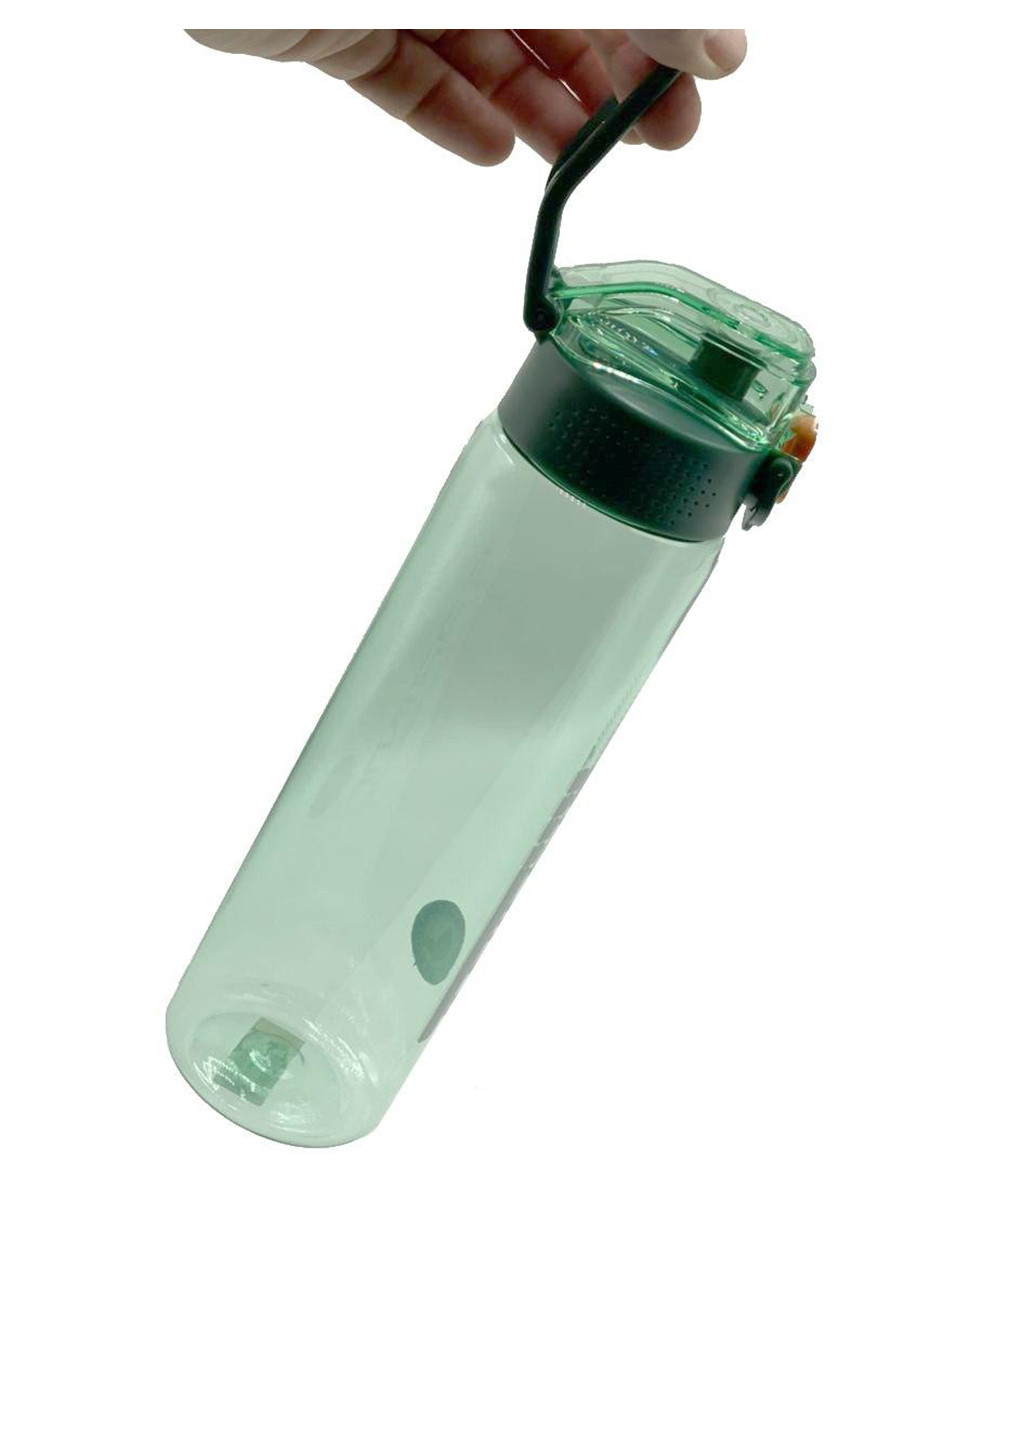 Спортивная бутылка для воды 750 Casno (242188101)